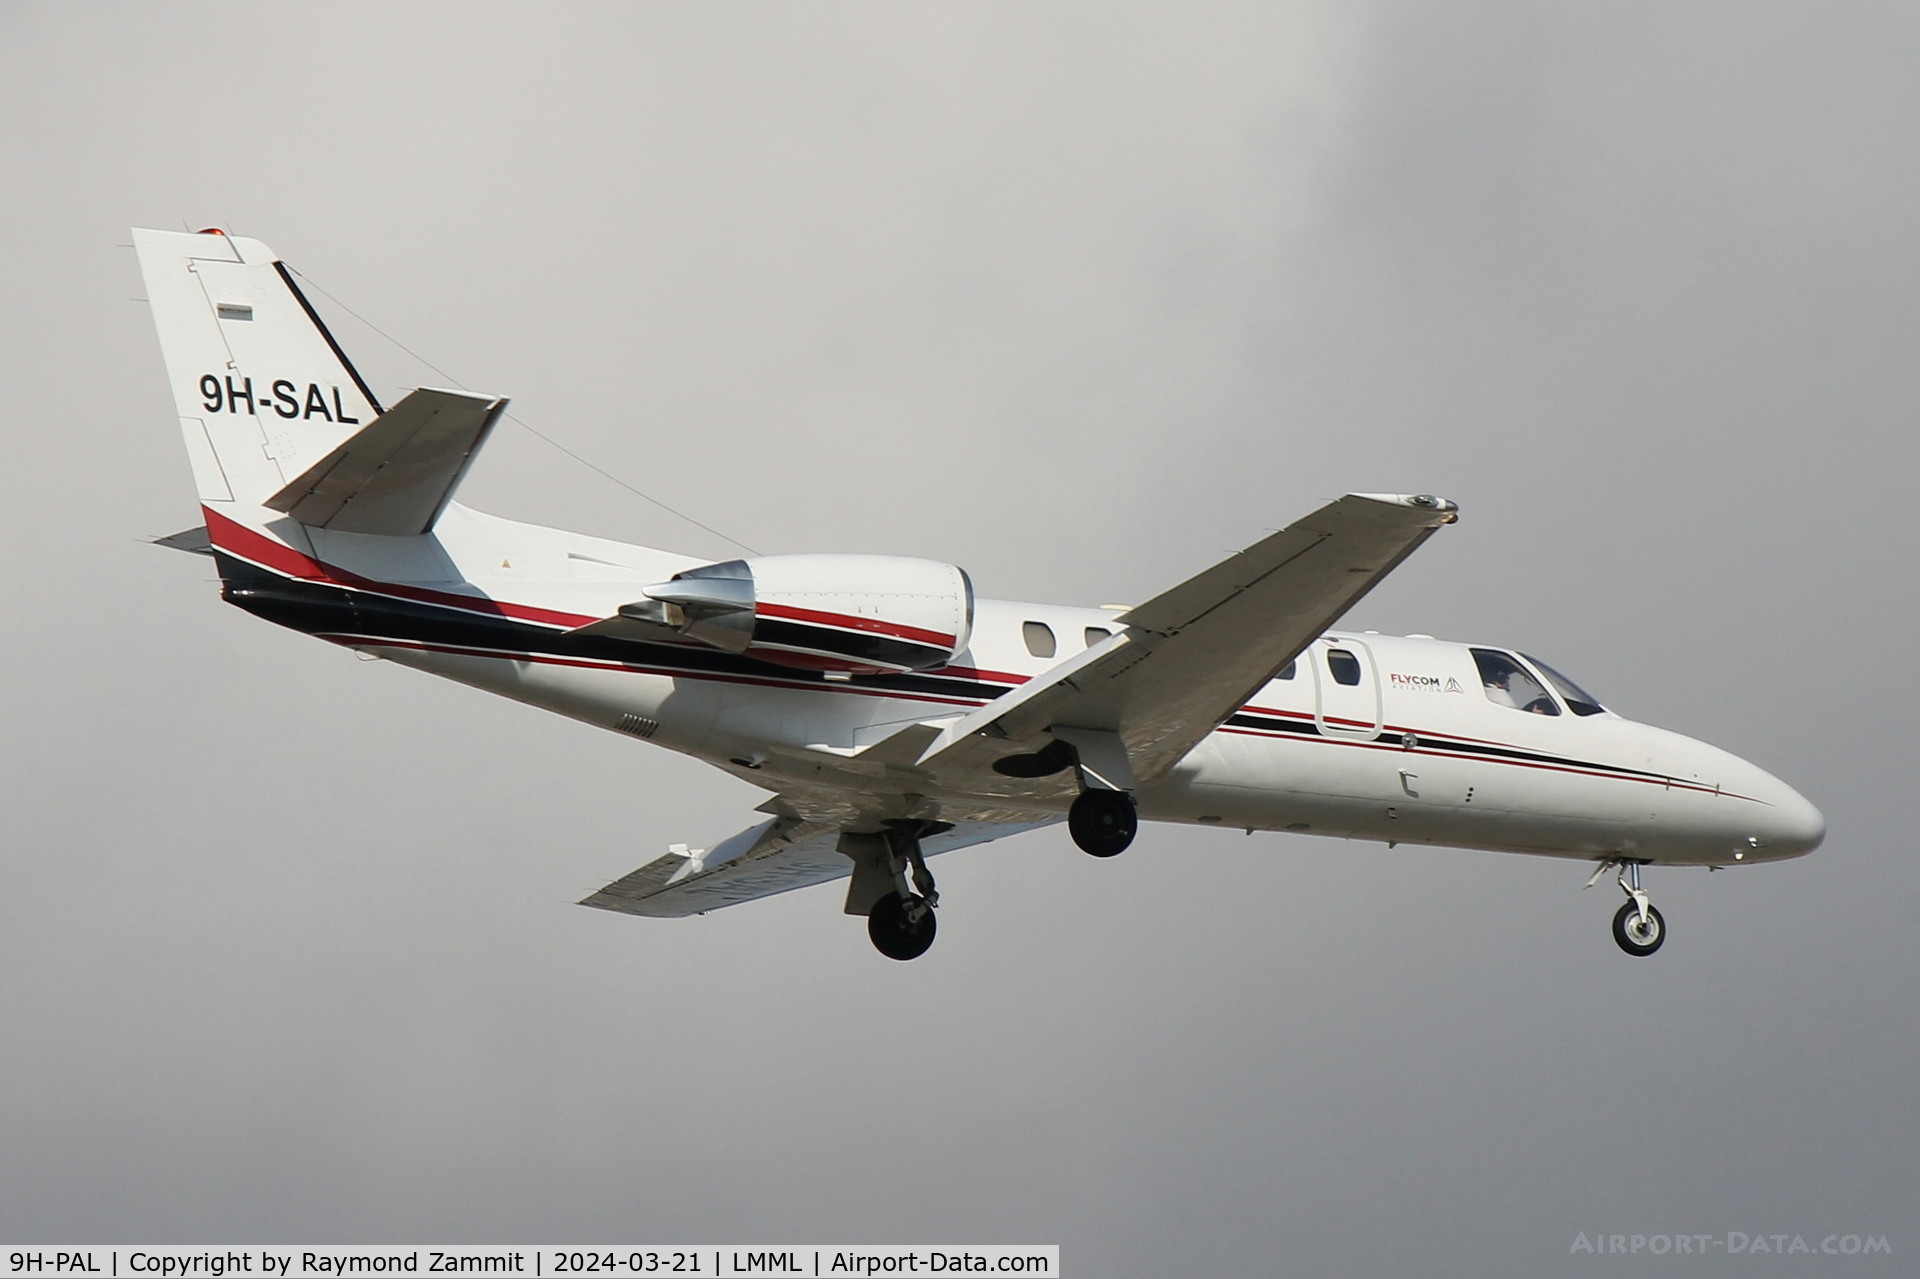 9H-PAL, 2000 Cessna 550 Citation Bravo C/N 550-0932, Cessna 550 Citation Bravo 9H-PAL Maleth Aero